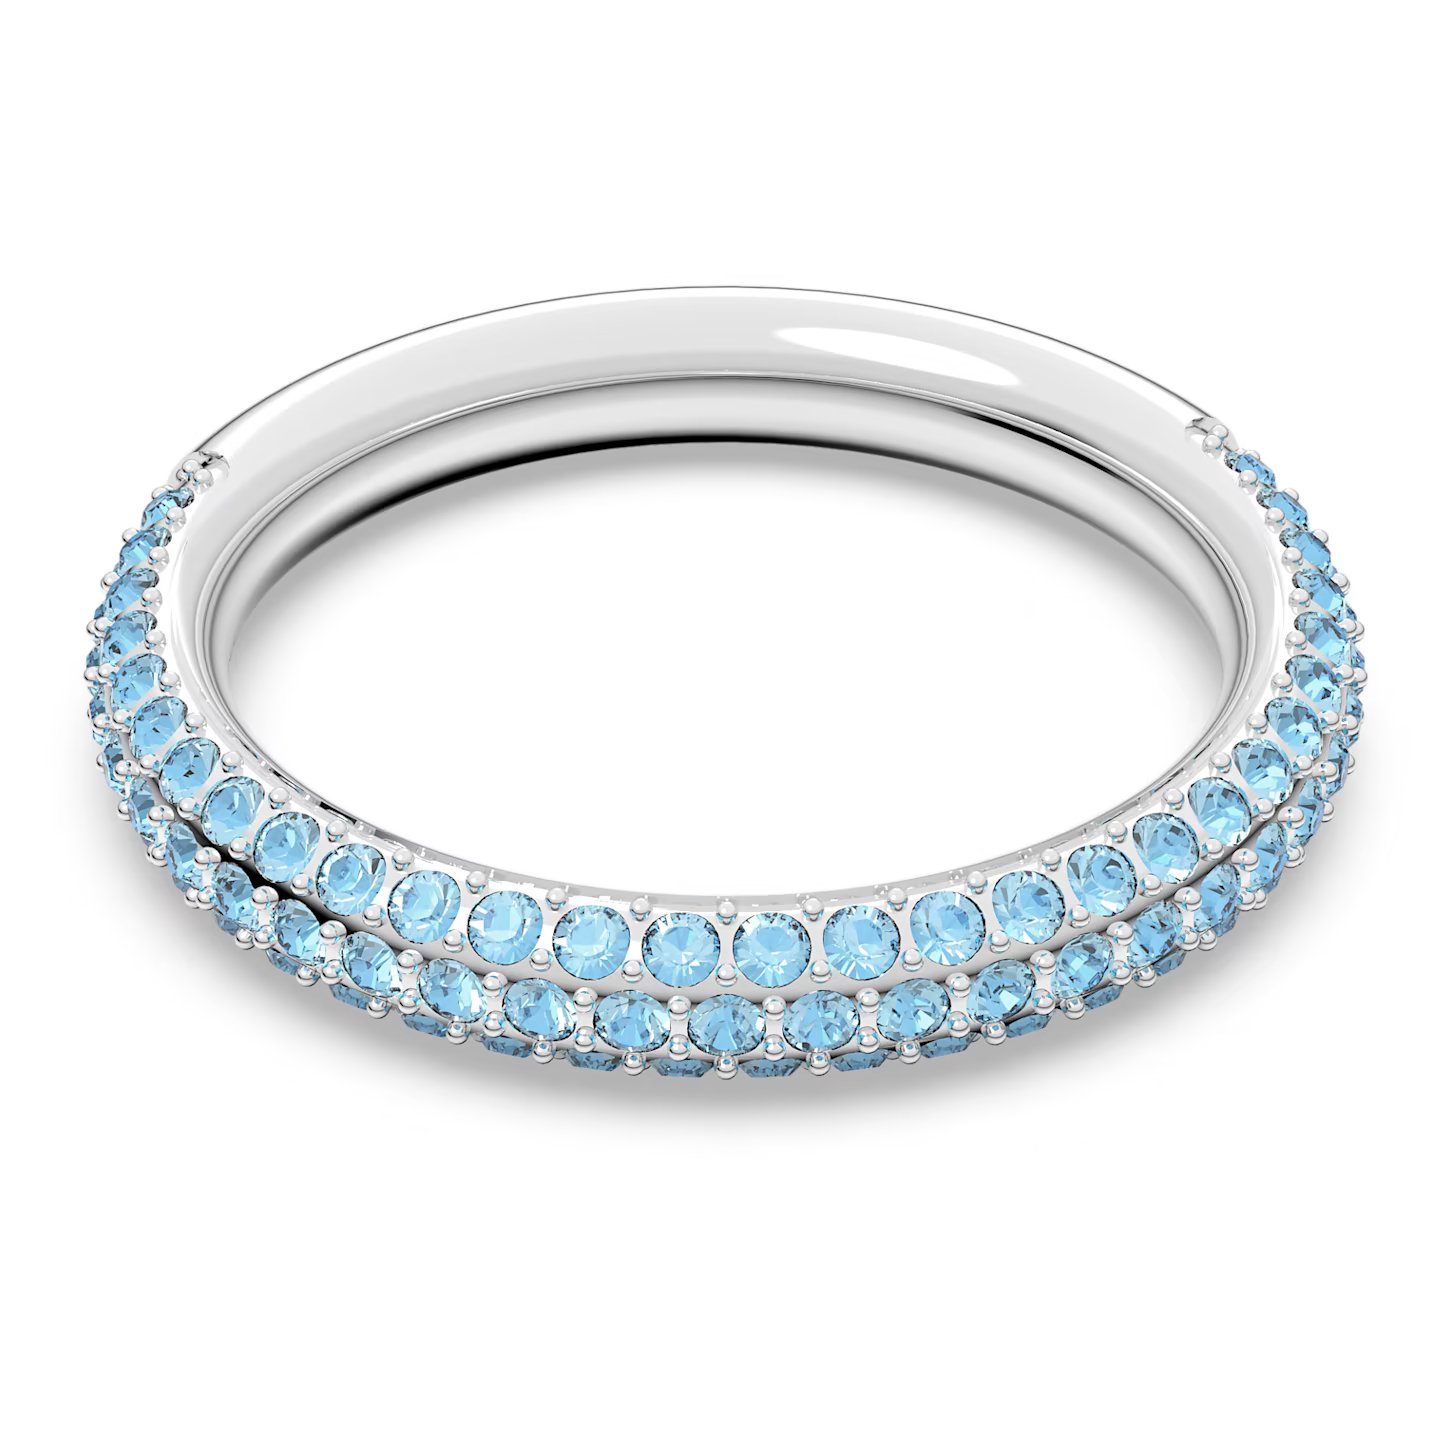 Swarovski Nádherný prsteň s modrými kryštálmi Swarovski Stone 5642903 60 mm